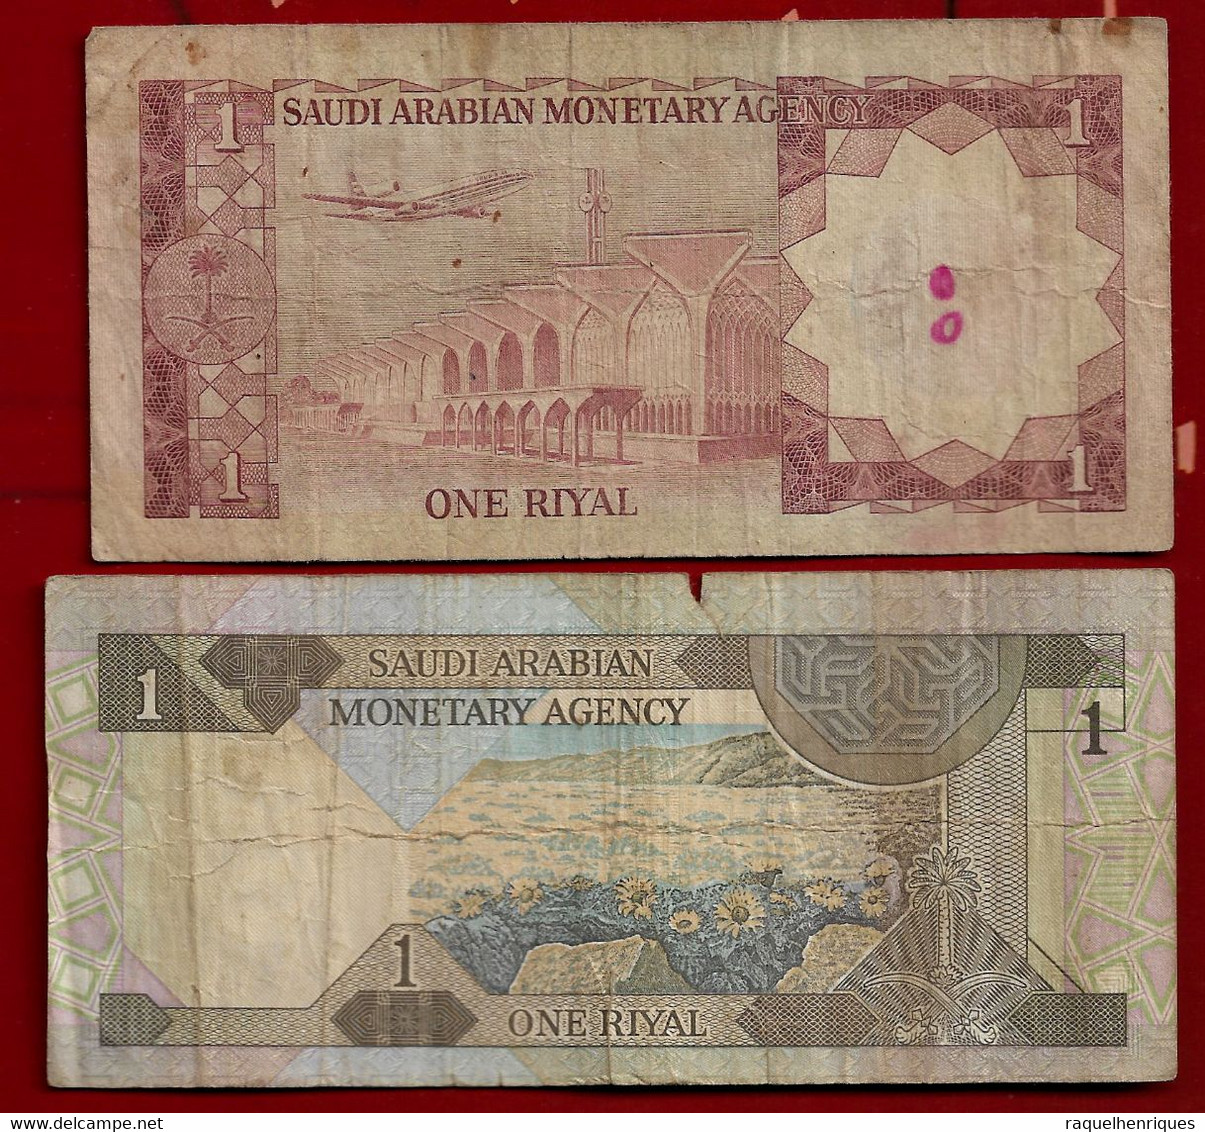 SAUDI ARABIA BANKNOTE - 2 NOTES 1 RIYAL (1984) - (1977) P#21d-16 F (NT#03) - Arabie Saoudite